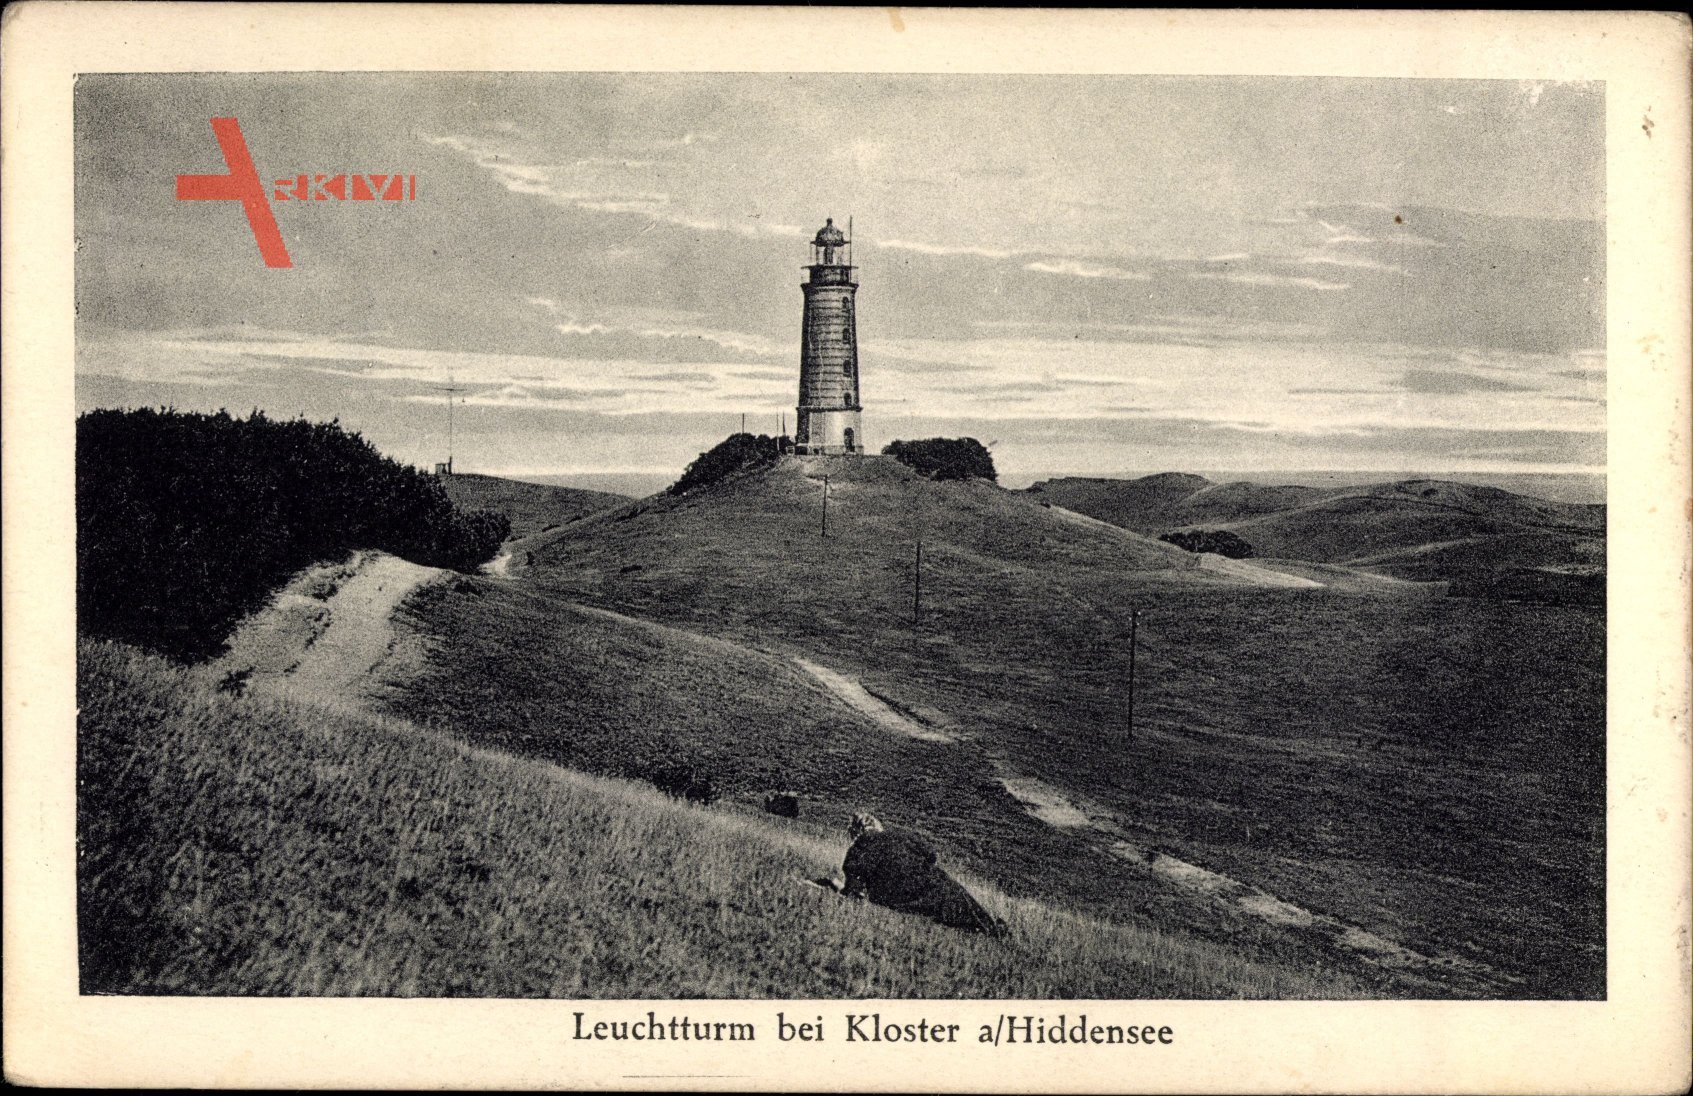 Insel Hiddensee in der Ostsee, Leuchtturm bei Kloster, Landschaft